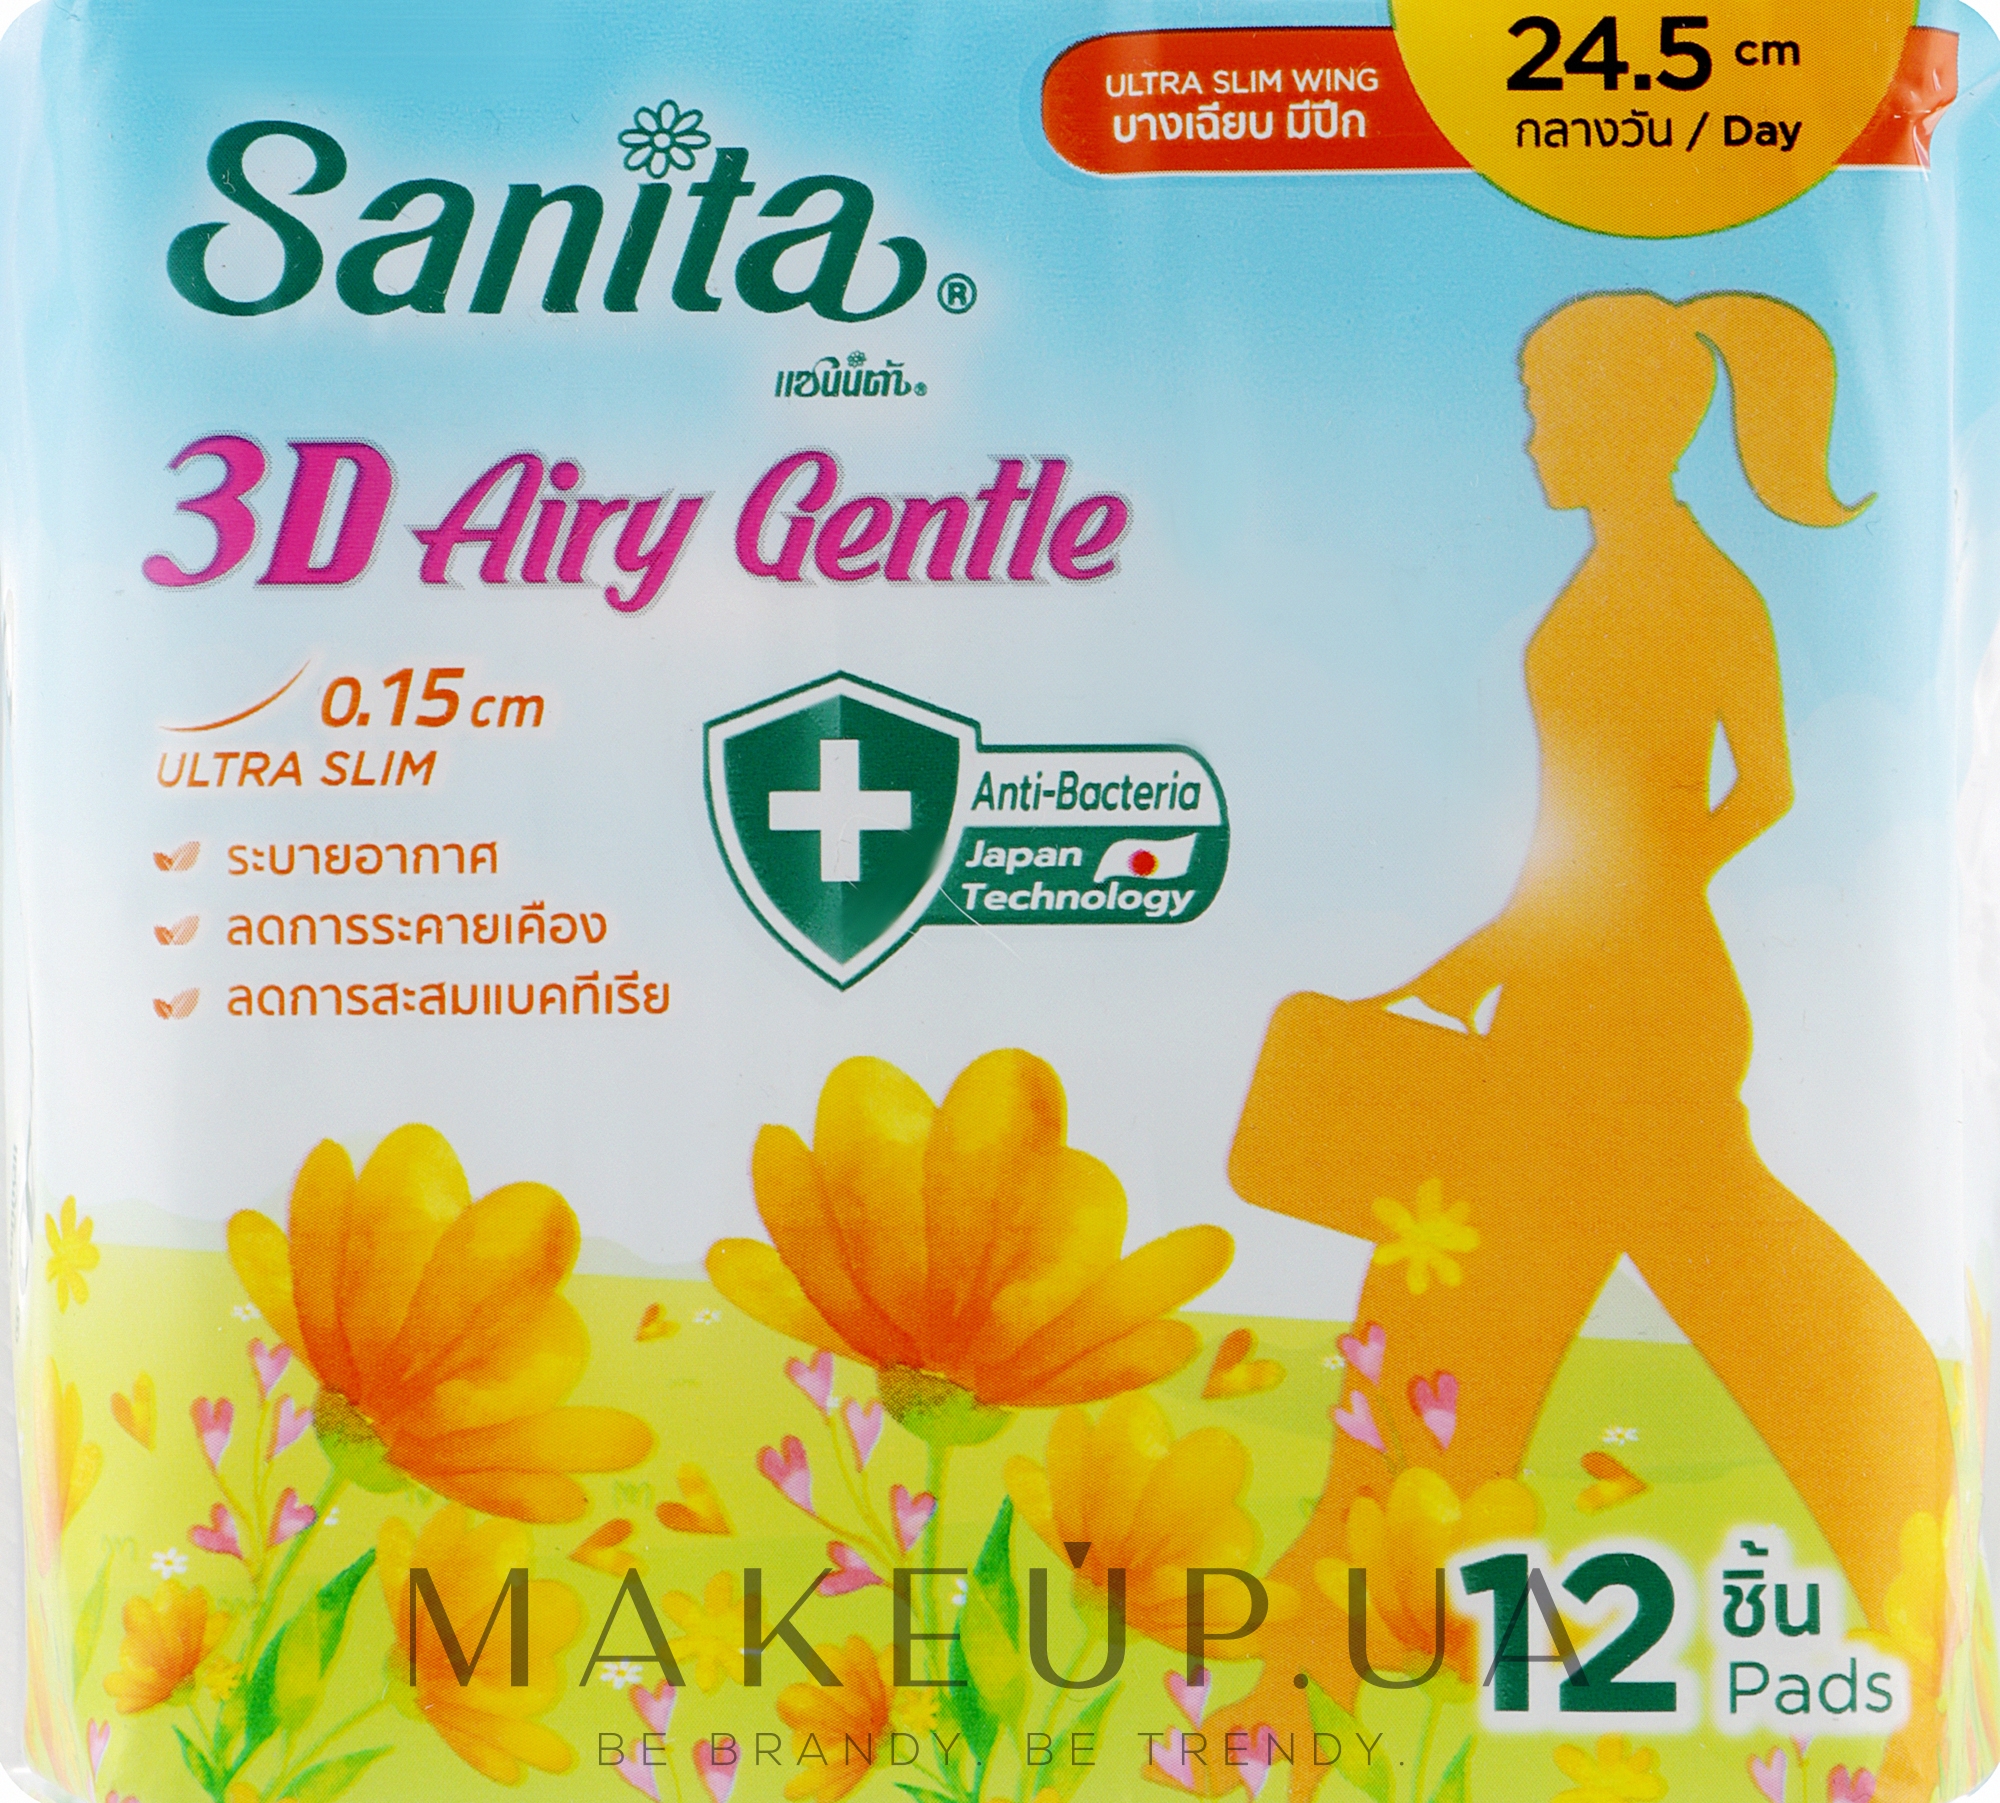 Ультратонкі гігієнічні прокладки з крильцями 24,5 см, 12 шт. - Sanita 3D Airy Gentle Ultra Slim Wing — фото 12шт